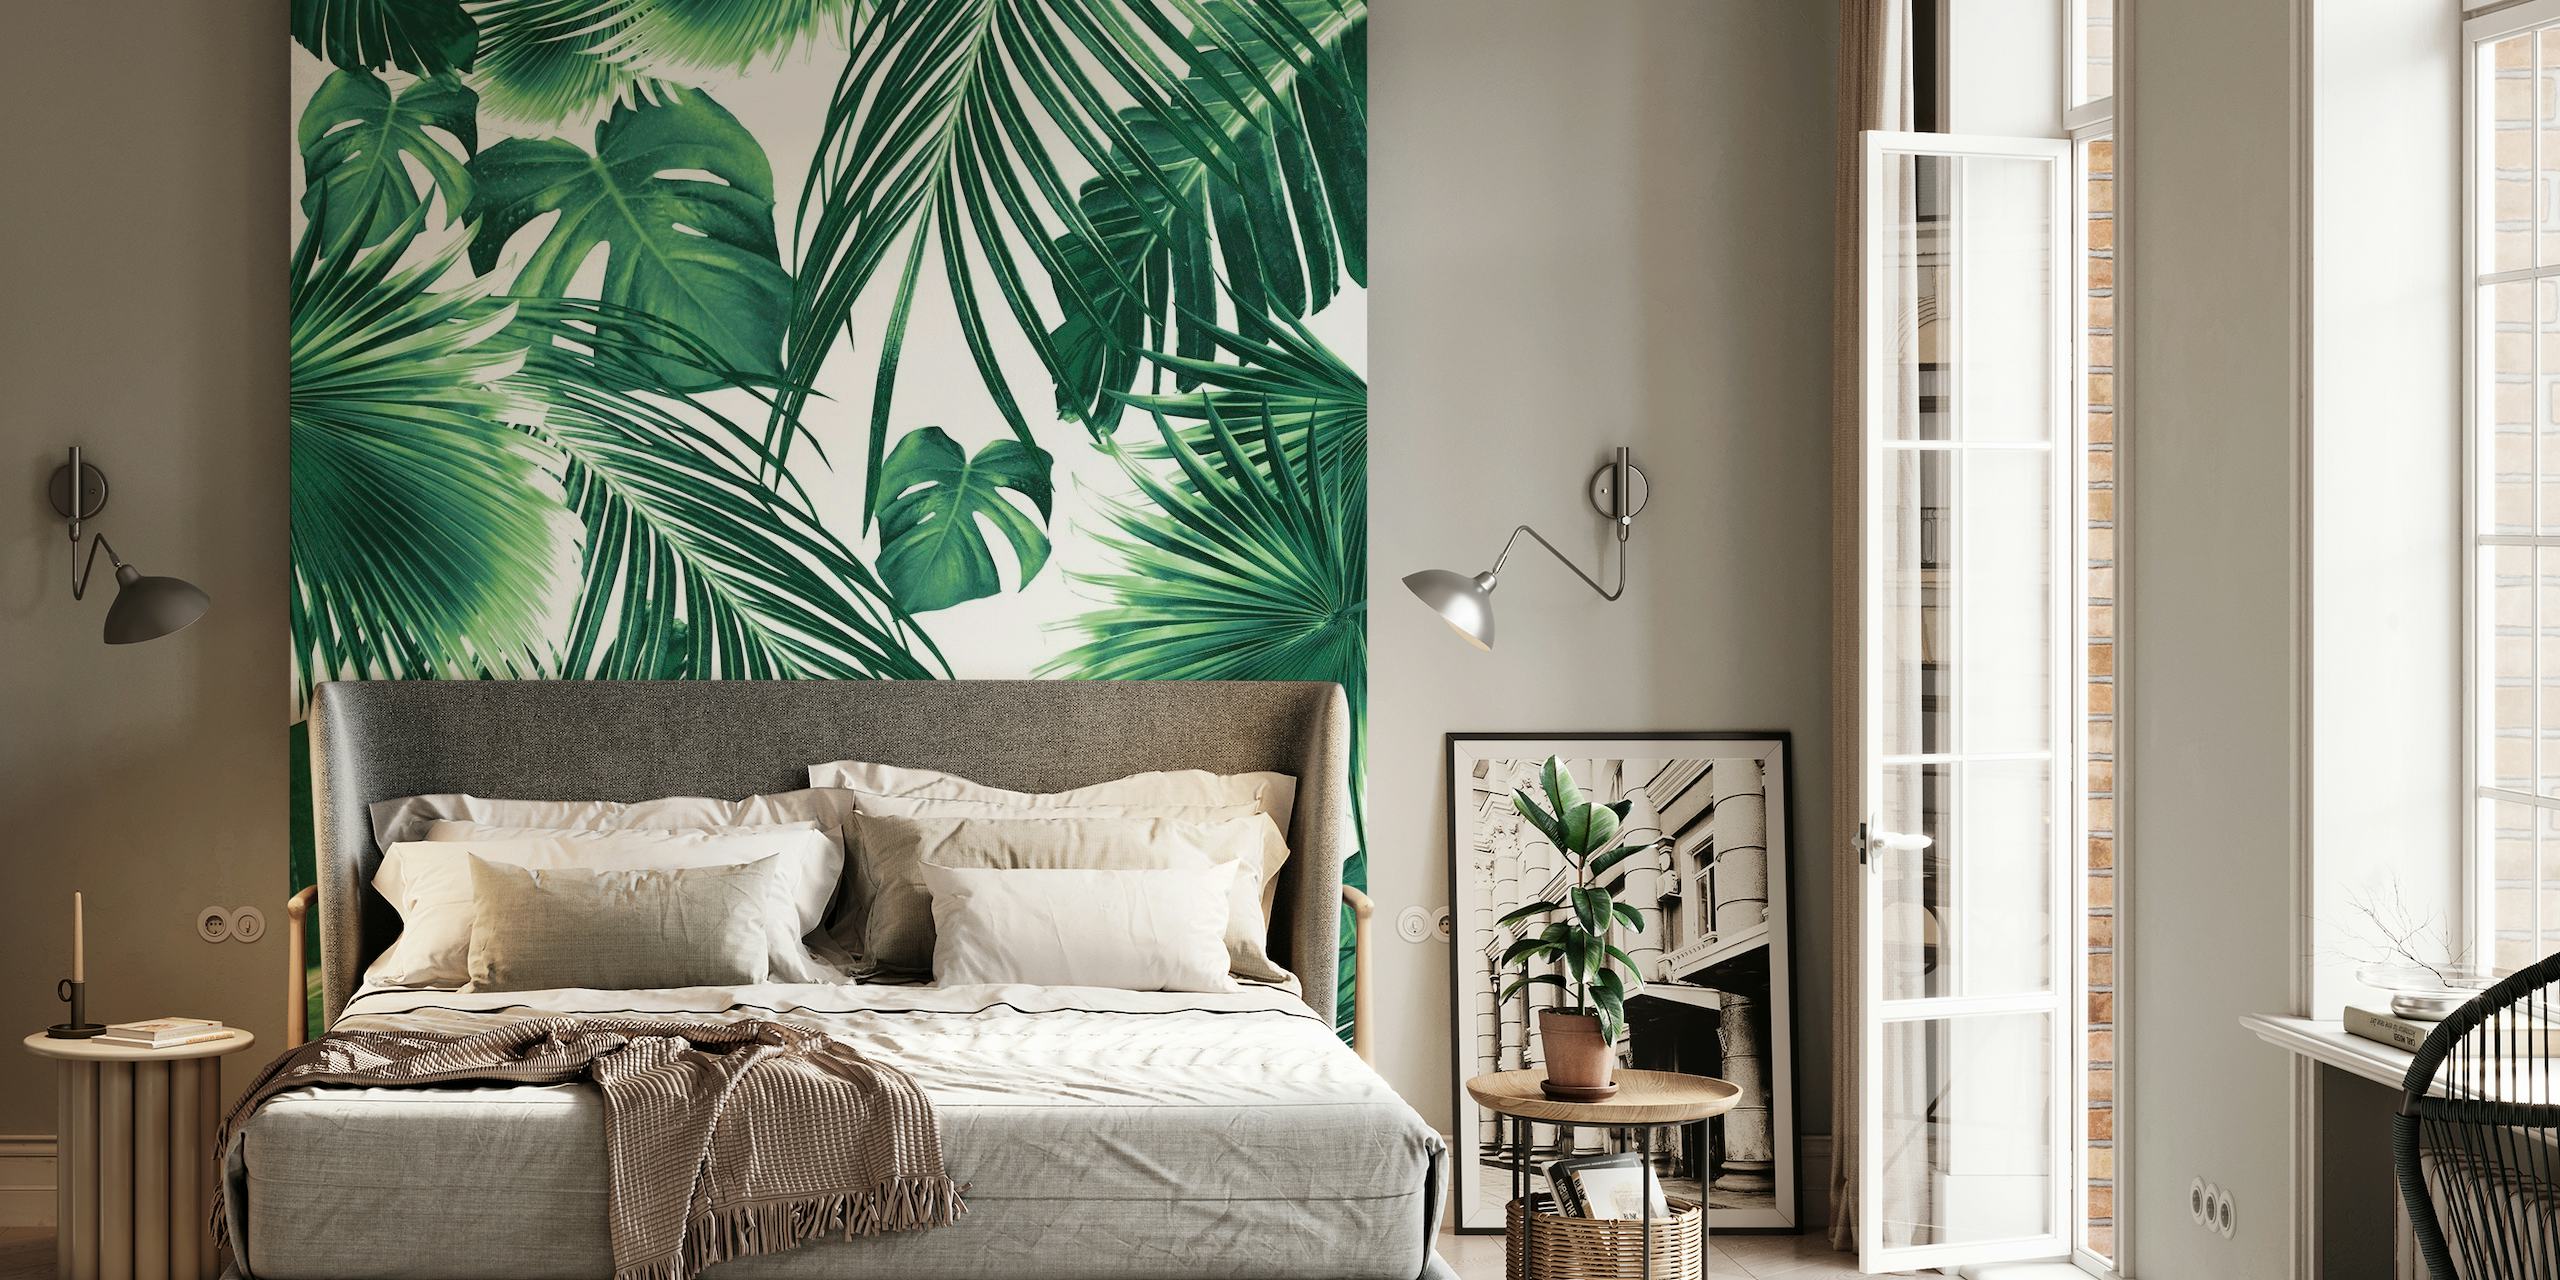 Un exuberante mural con un denso patrón de hojas de la selva tropical en tonos verdes.